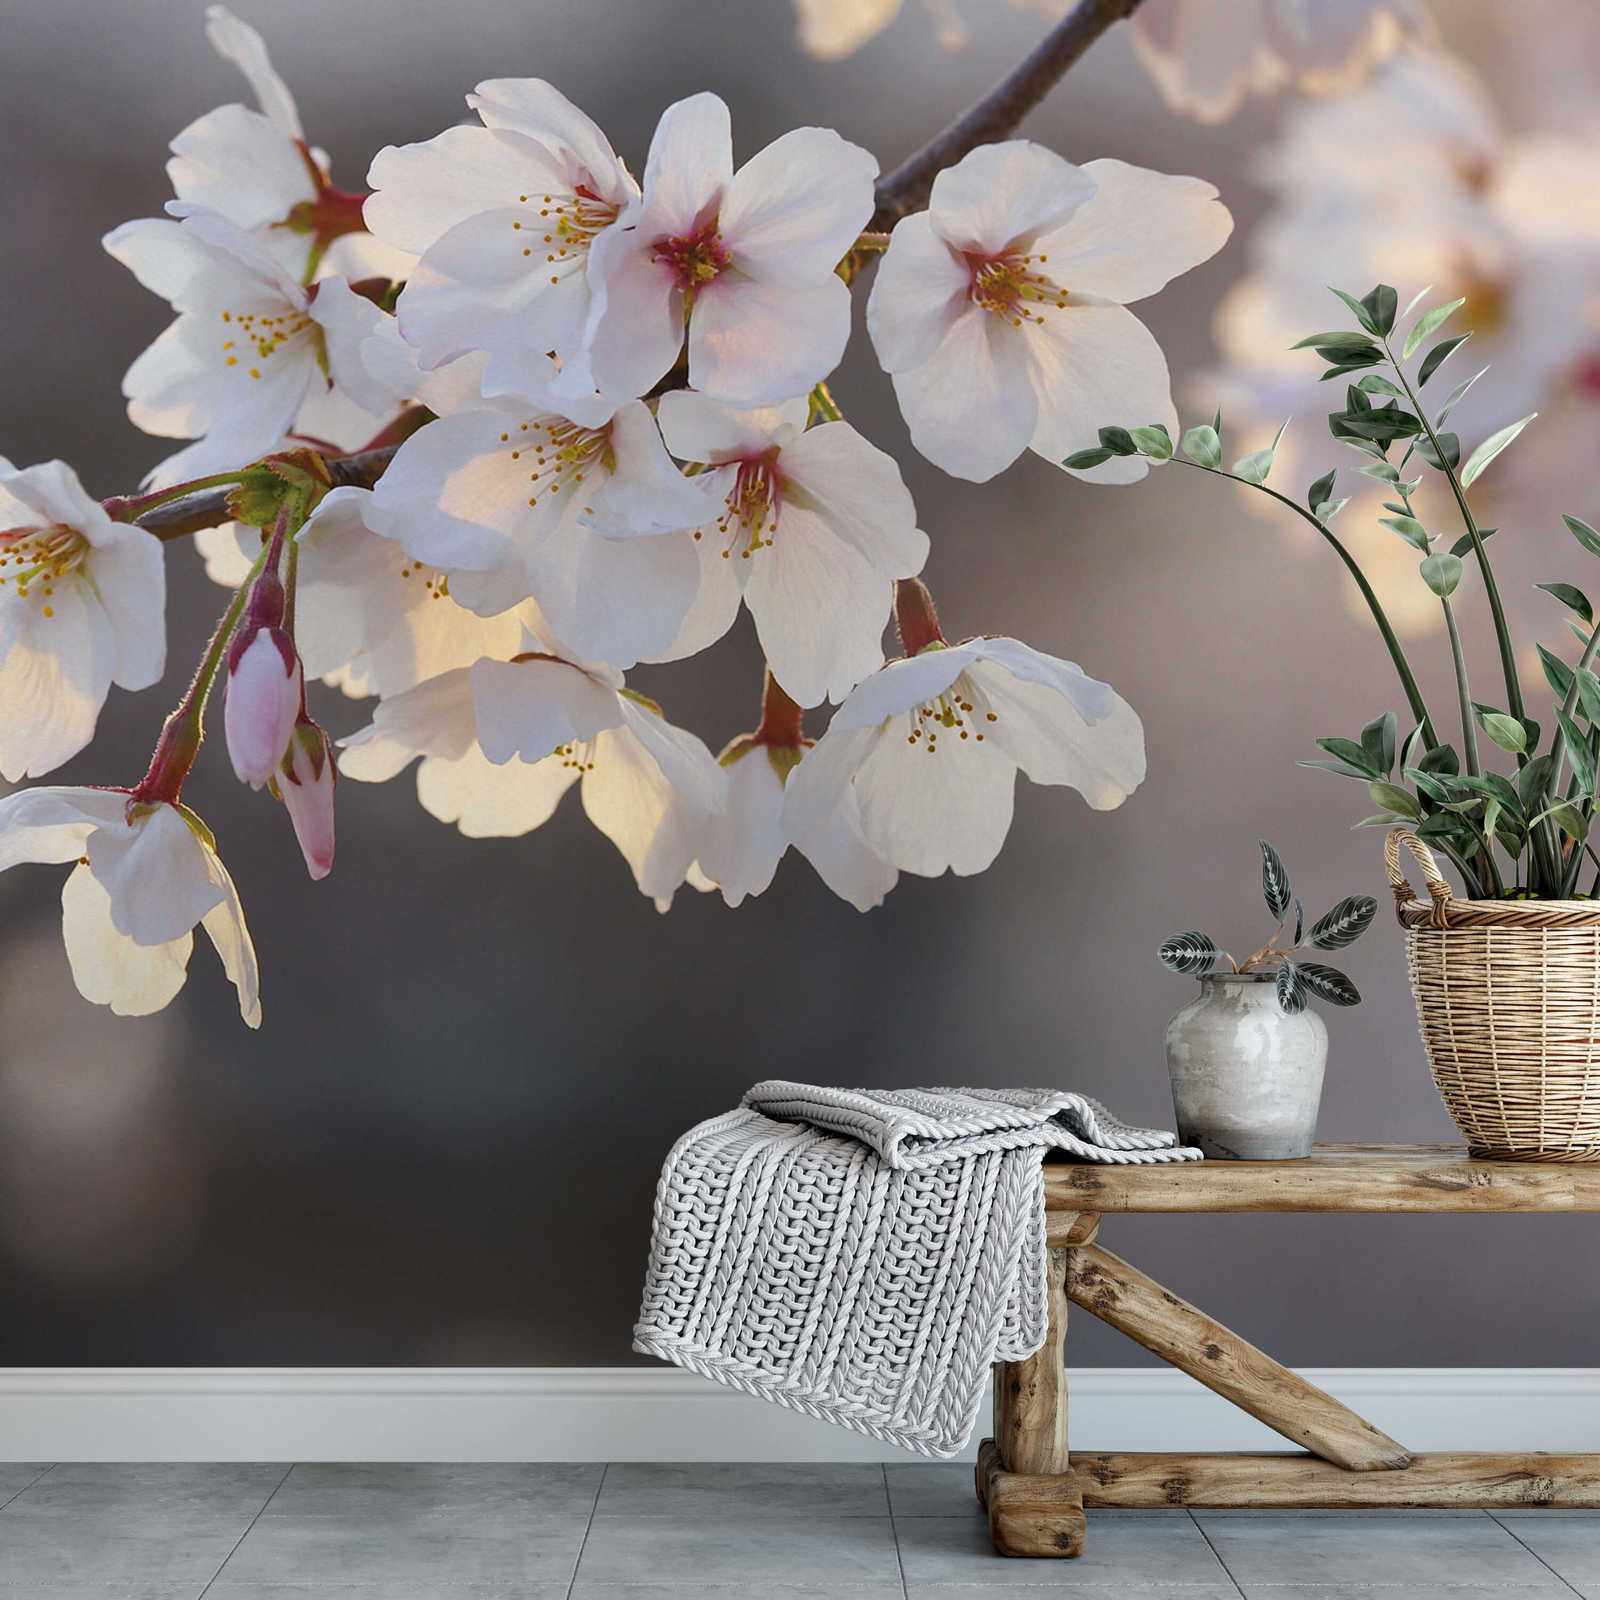             Papier peint fleurs de cerisier - blanc, rose, marron
        